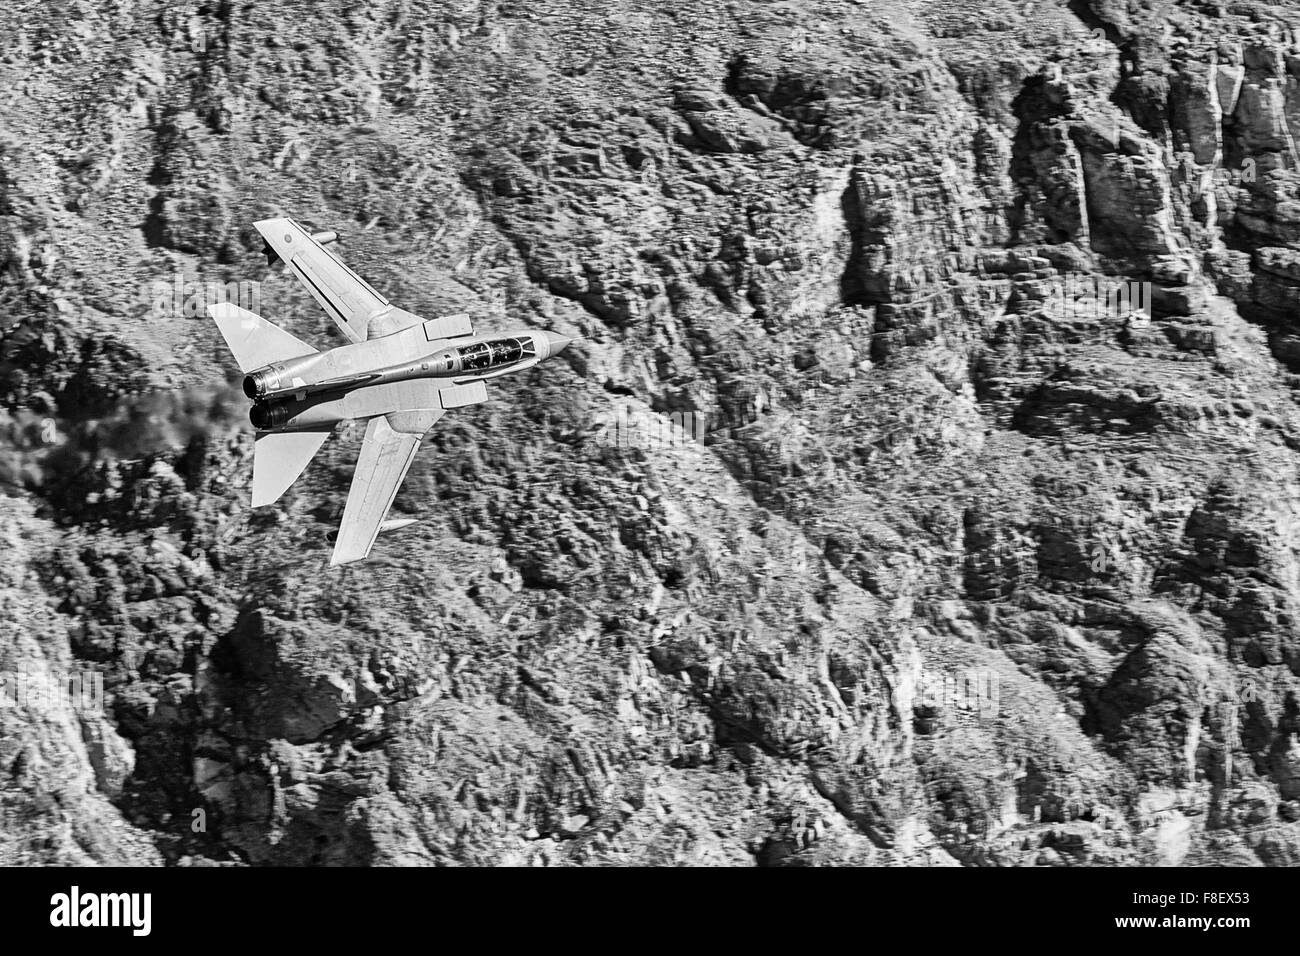 Royal Air Force Tornado GR4 jet fighter battenti a basso livello attraverso una vallata desertica. Foto Stock